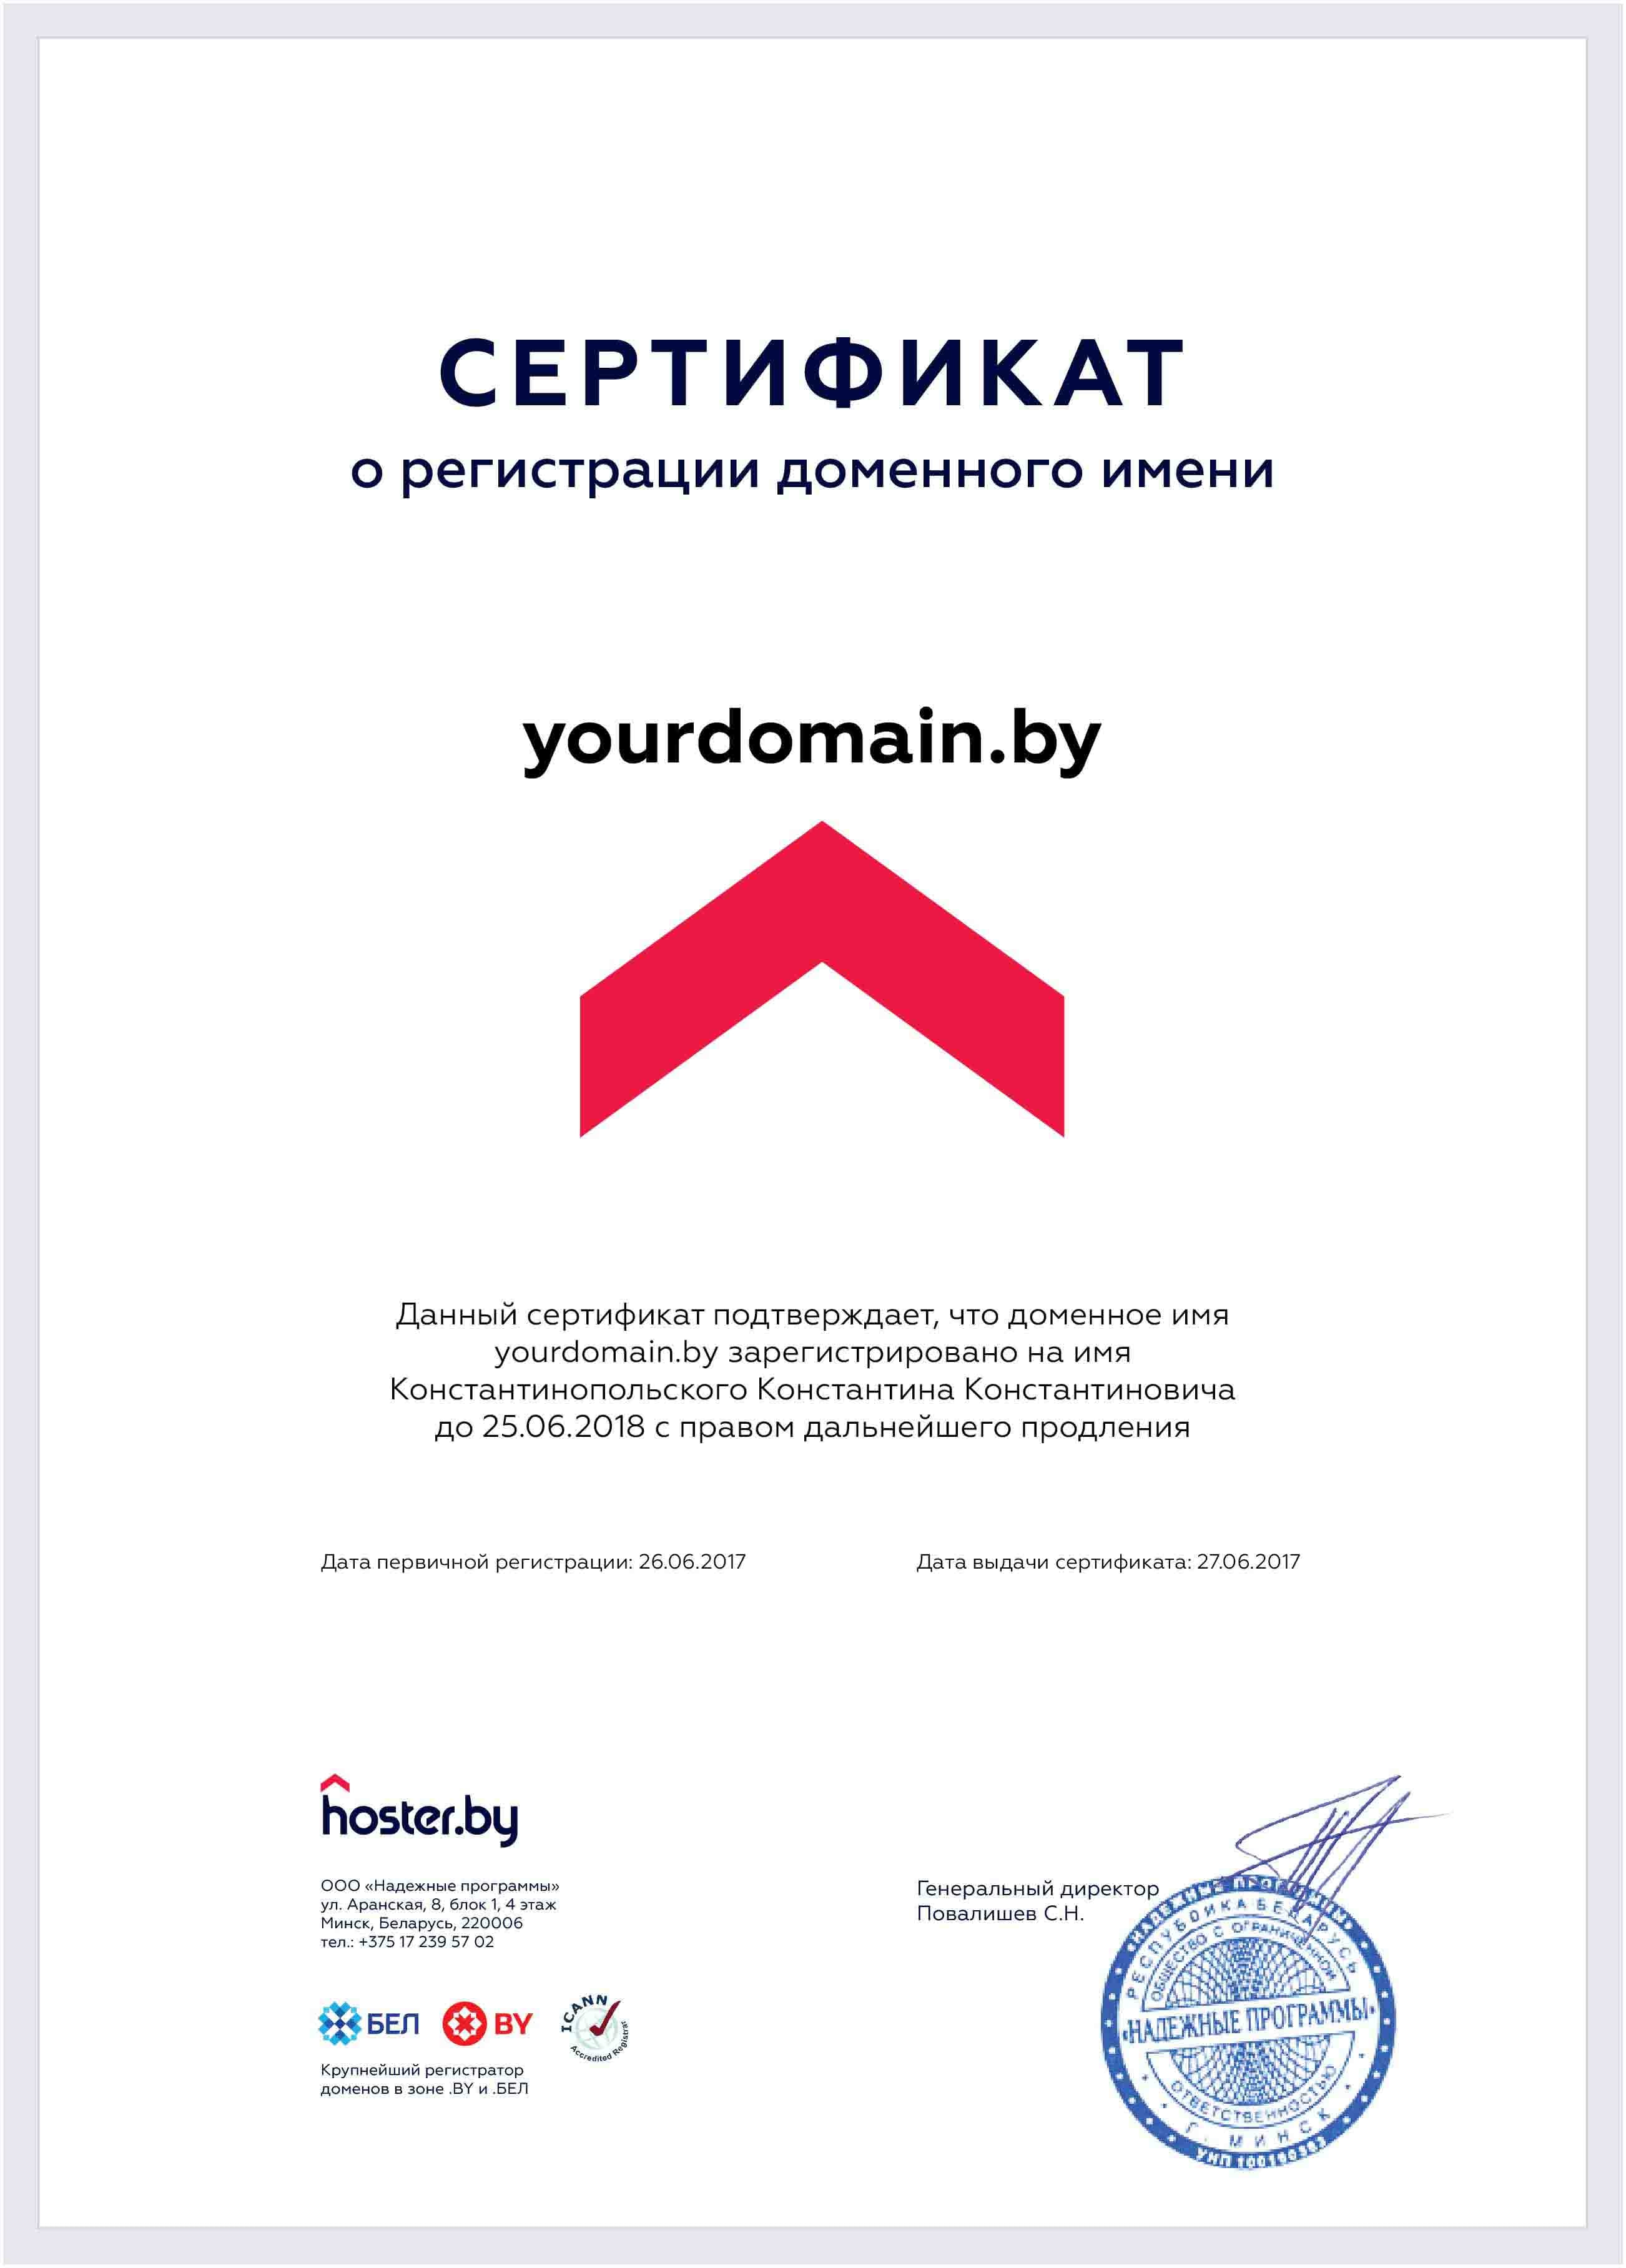 Доменный сертификат. Сертификат на домен. Сертификат на доменное имя. Сертификат о регистрации домена. Сертификат на владение доменом.